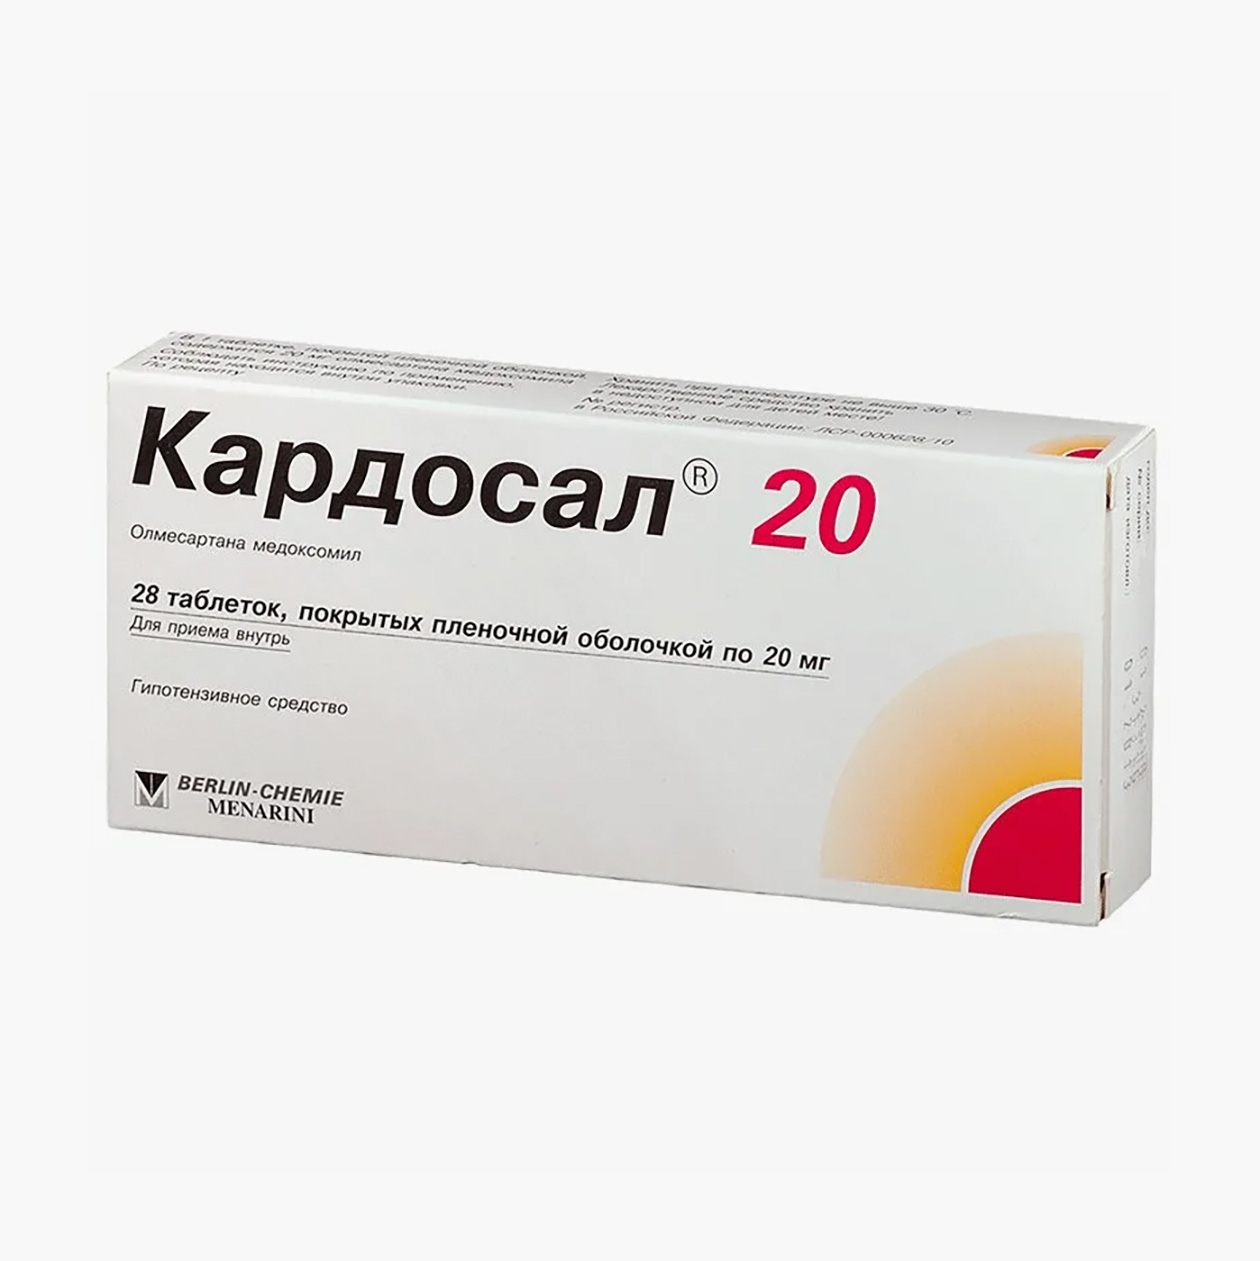 «Кардосал», 20 мг. Аналогов по действующему веществу у препарата нет